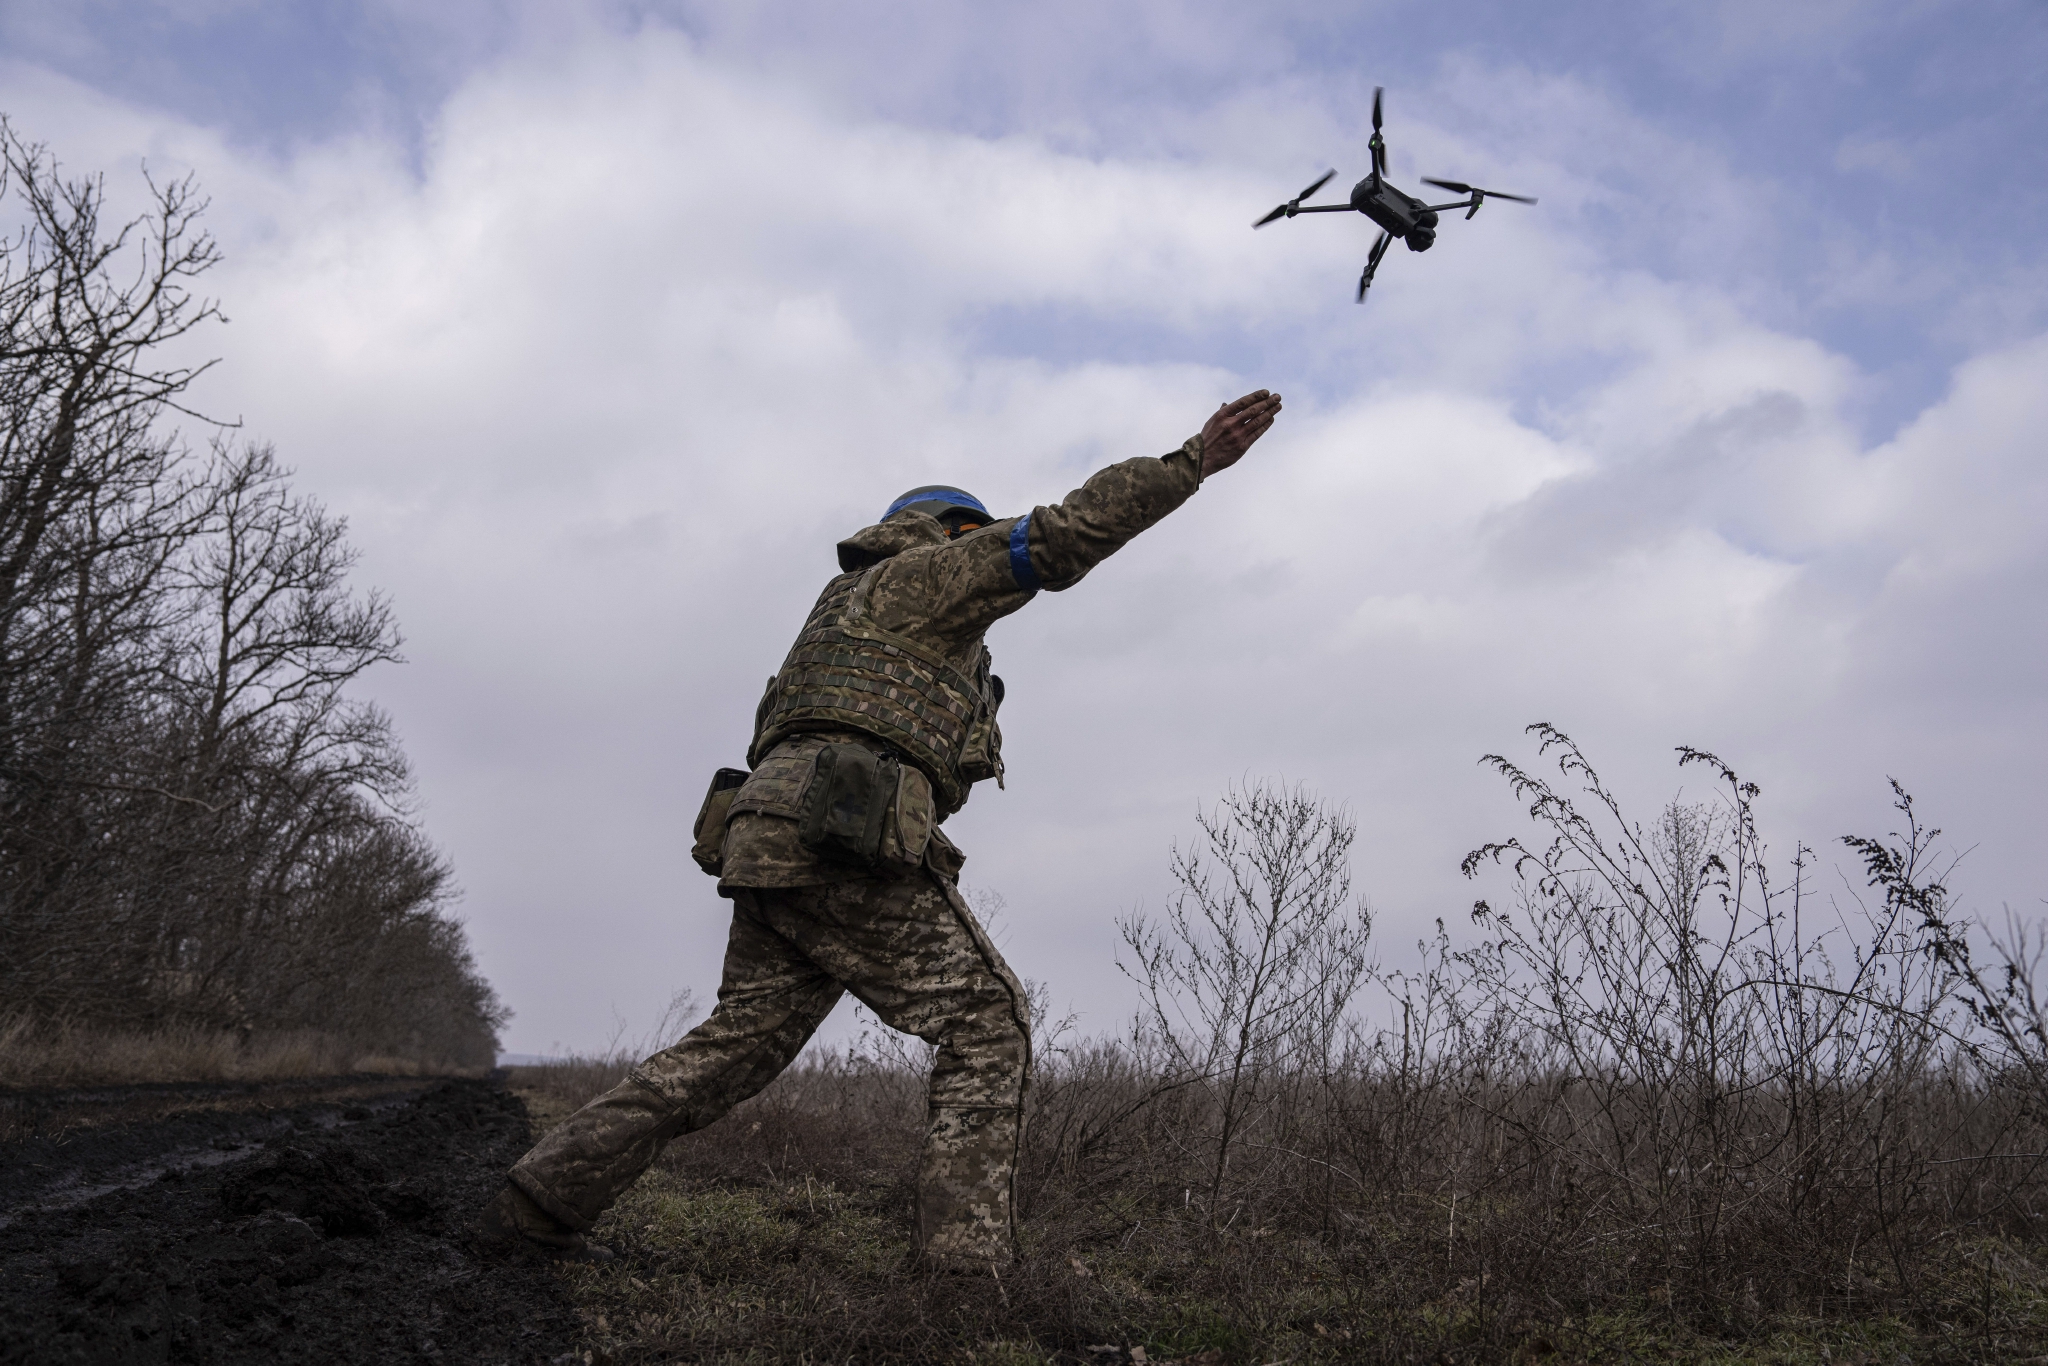 这不是玩具：澳“纸板无人机”投入乌克兰战场